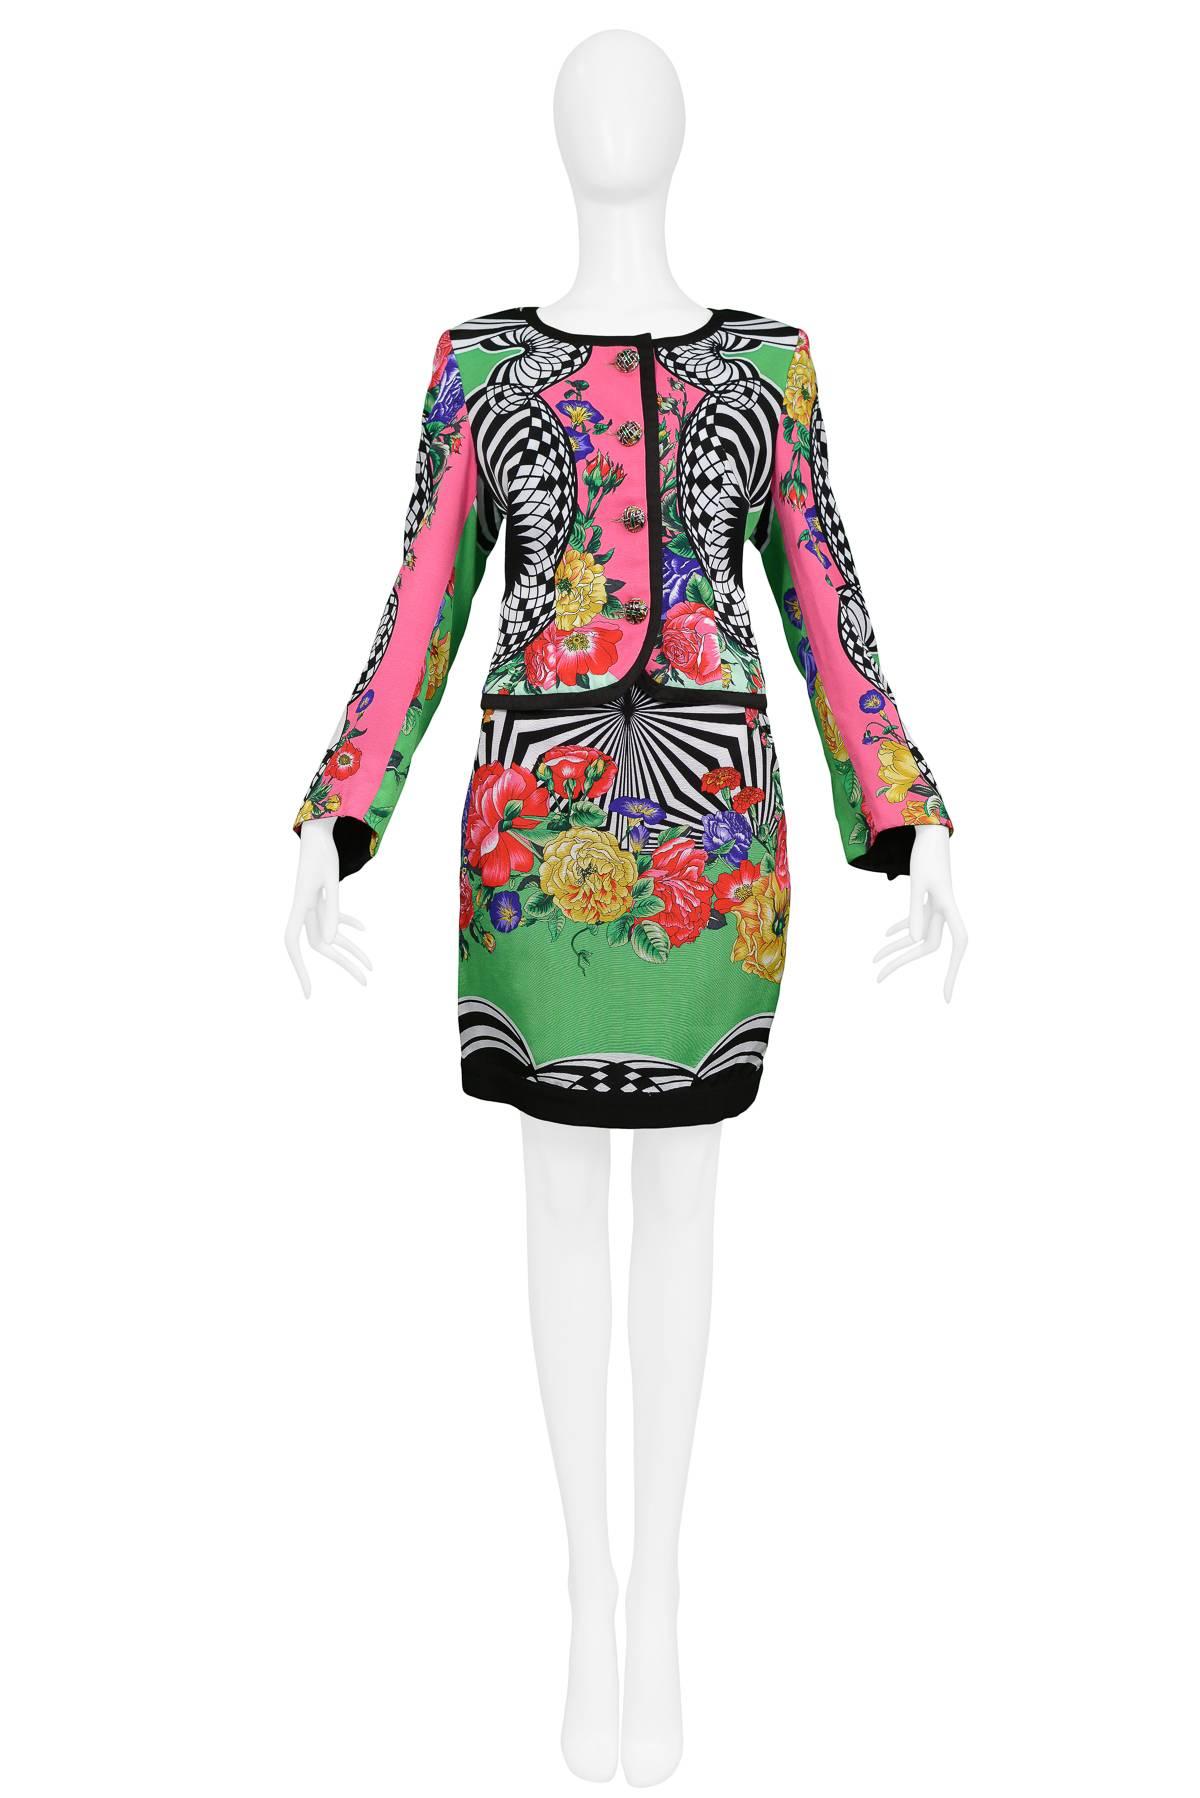 Resurrection Vintage est heureux d'offrir un ensemble veste et jupe vintage Gianni Versace Jeans Couture Op art et floral. La veste comporte des boutons fantaisie et des détails de garniture rouge. La jupe a une coupe classique et étroite.